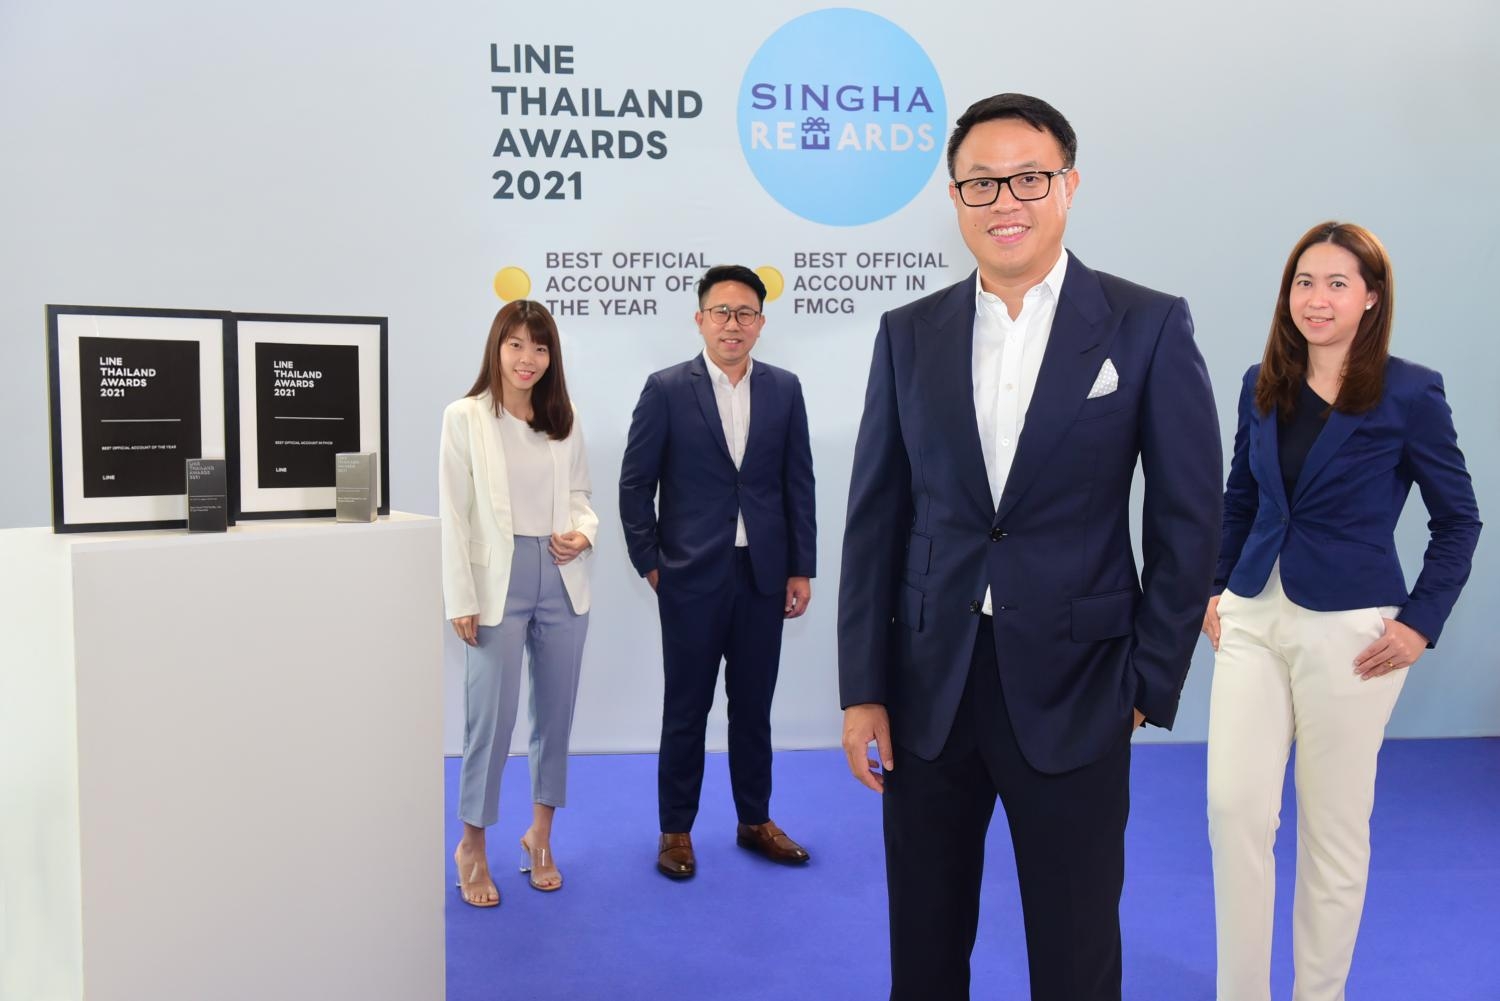 “น้ำดื่มสิงห์” คว้า 2 รางวัล LINE Thailand Awards 2021  สุดยอดแบรนด์ทำการตลาดดิจิทัลครองใจผู้บริโภค